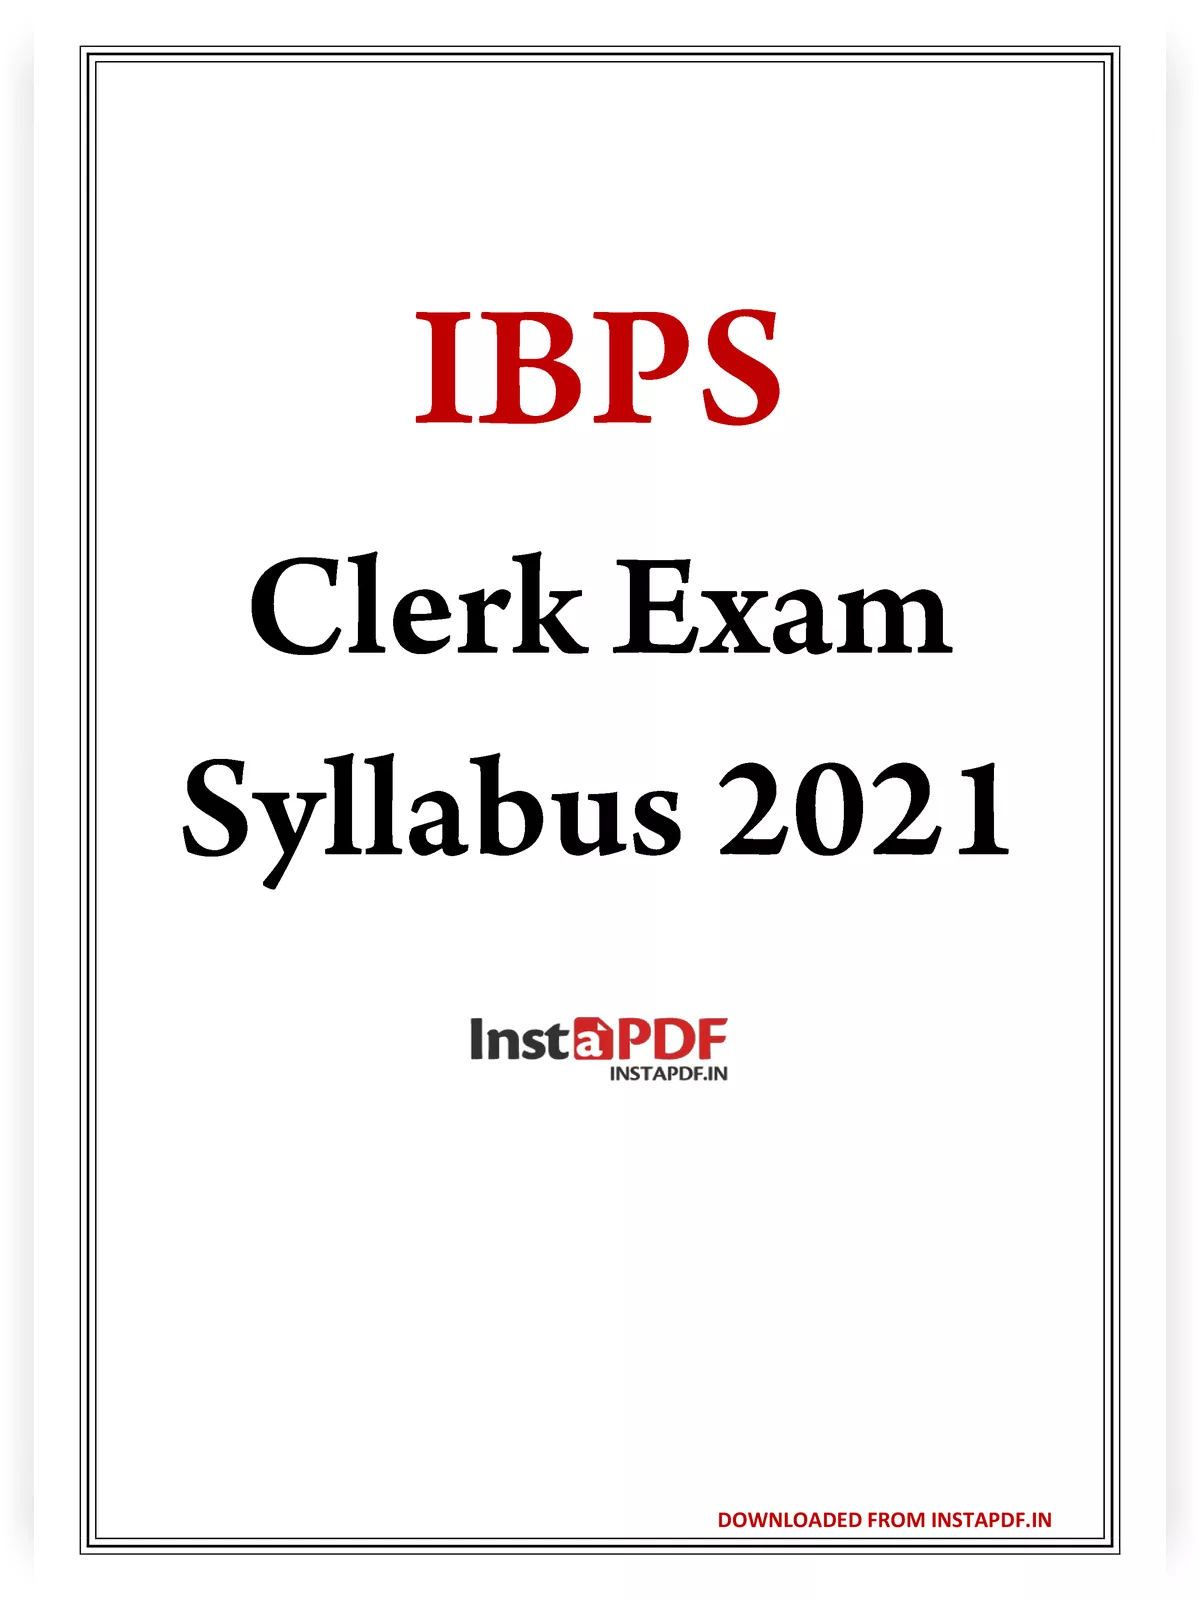 IBPS Clerk Exam Syllabus 2021